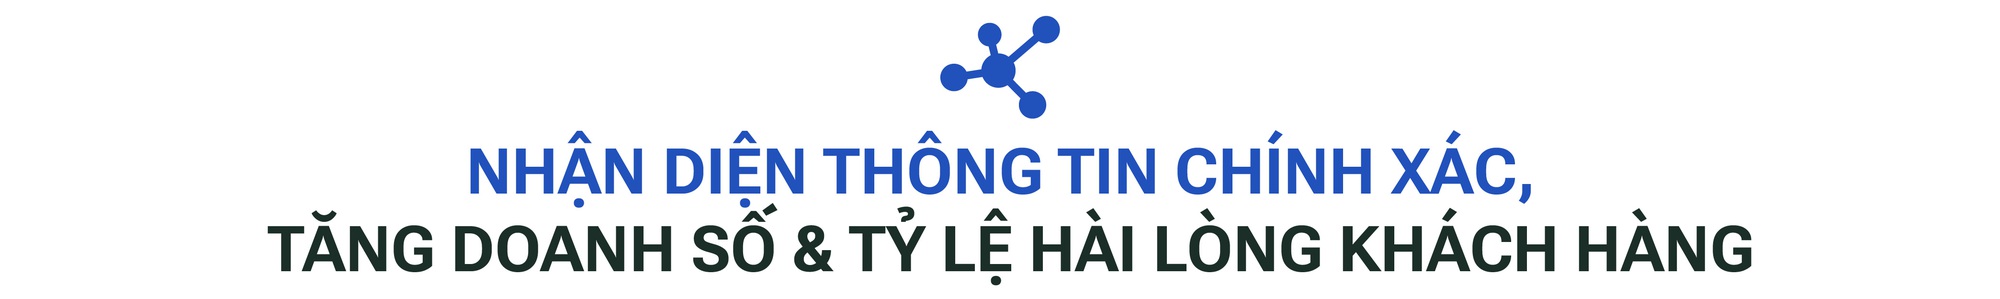 FPT.AI khẳng định vị thế tiên phong tại thị trường Việt Nam - Ảnh 5.